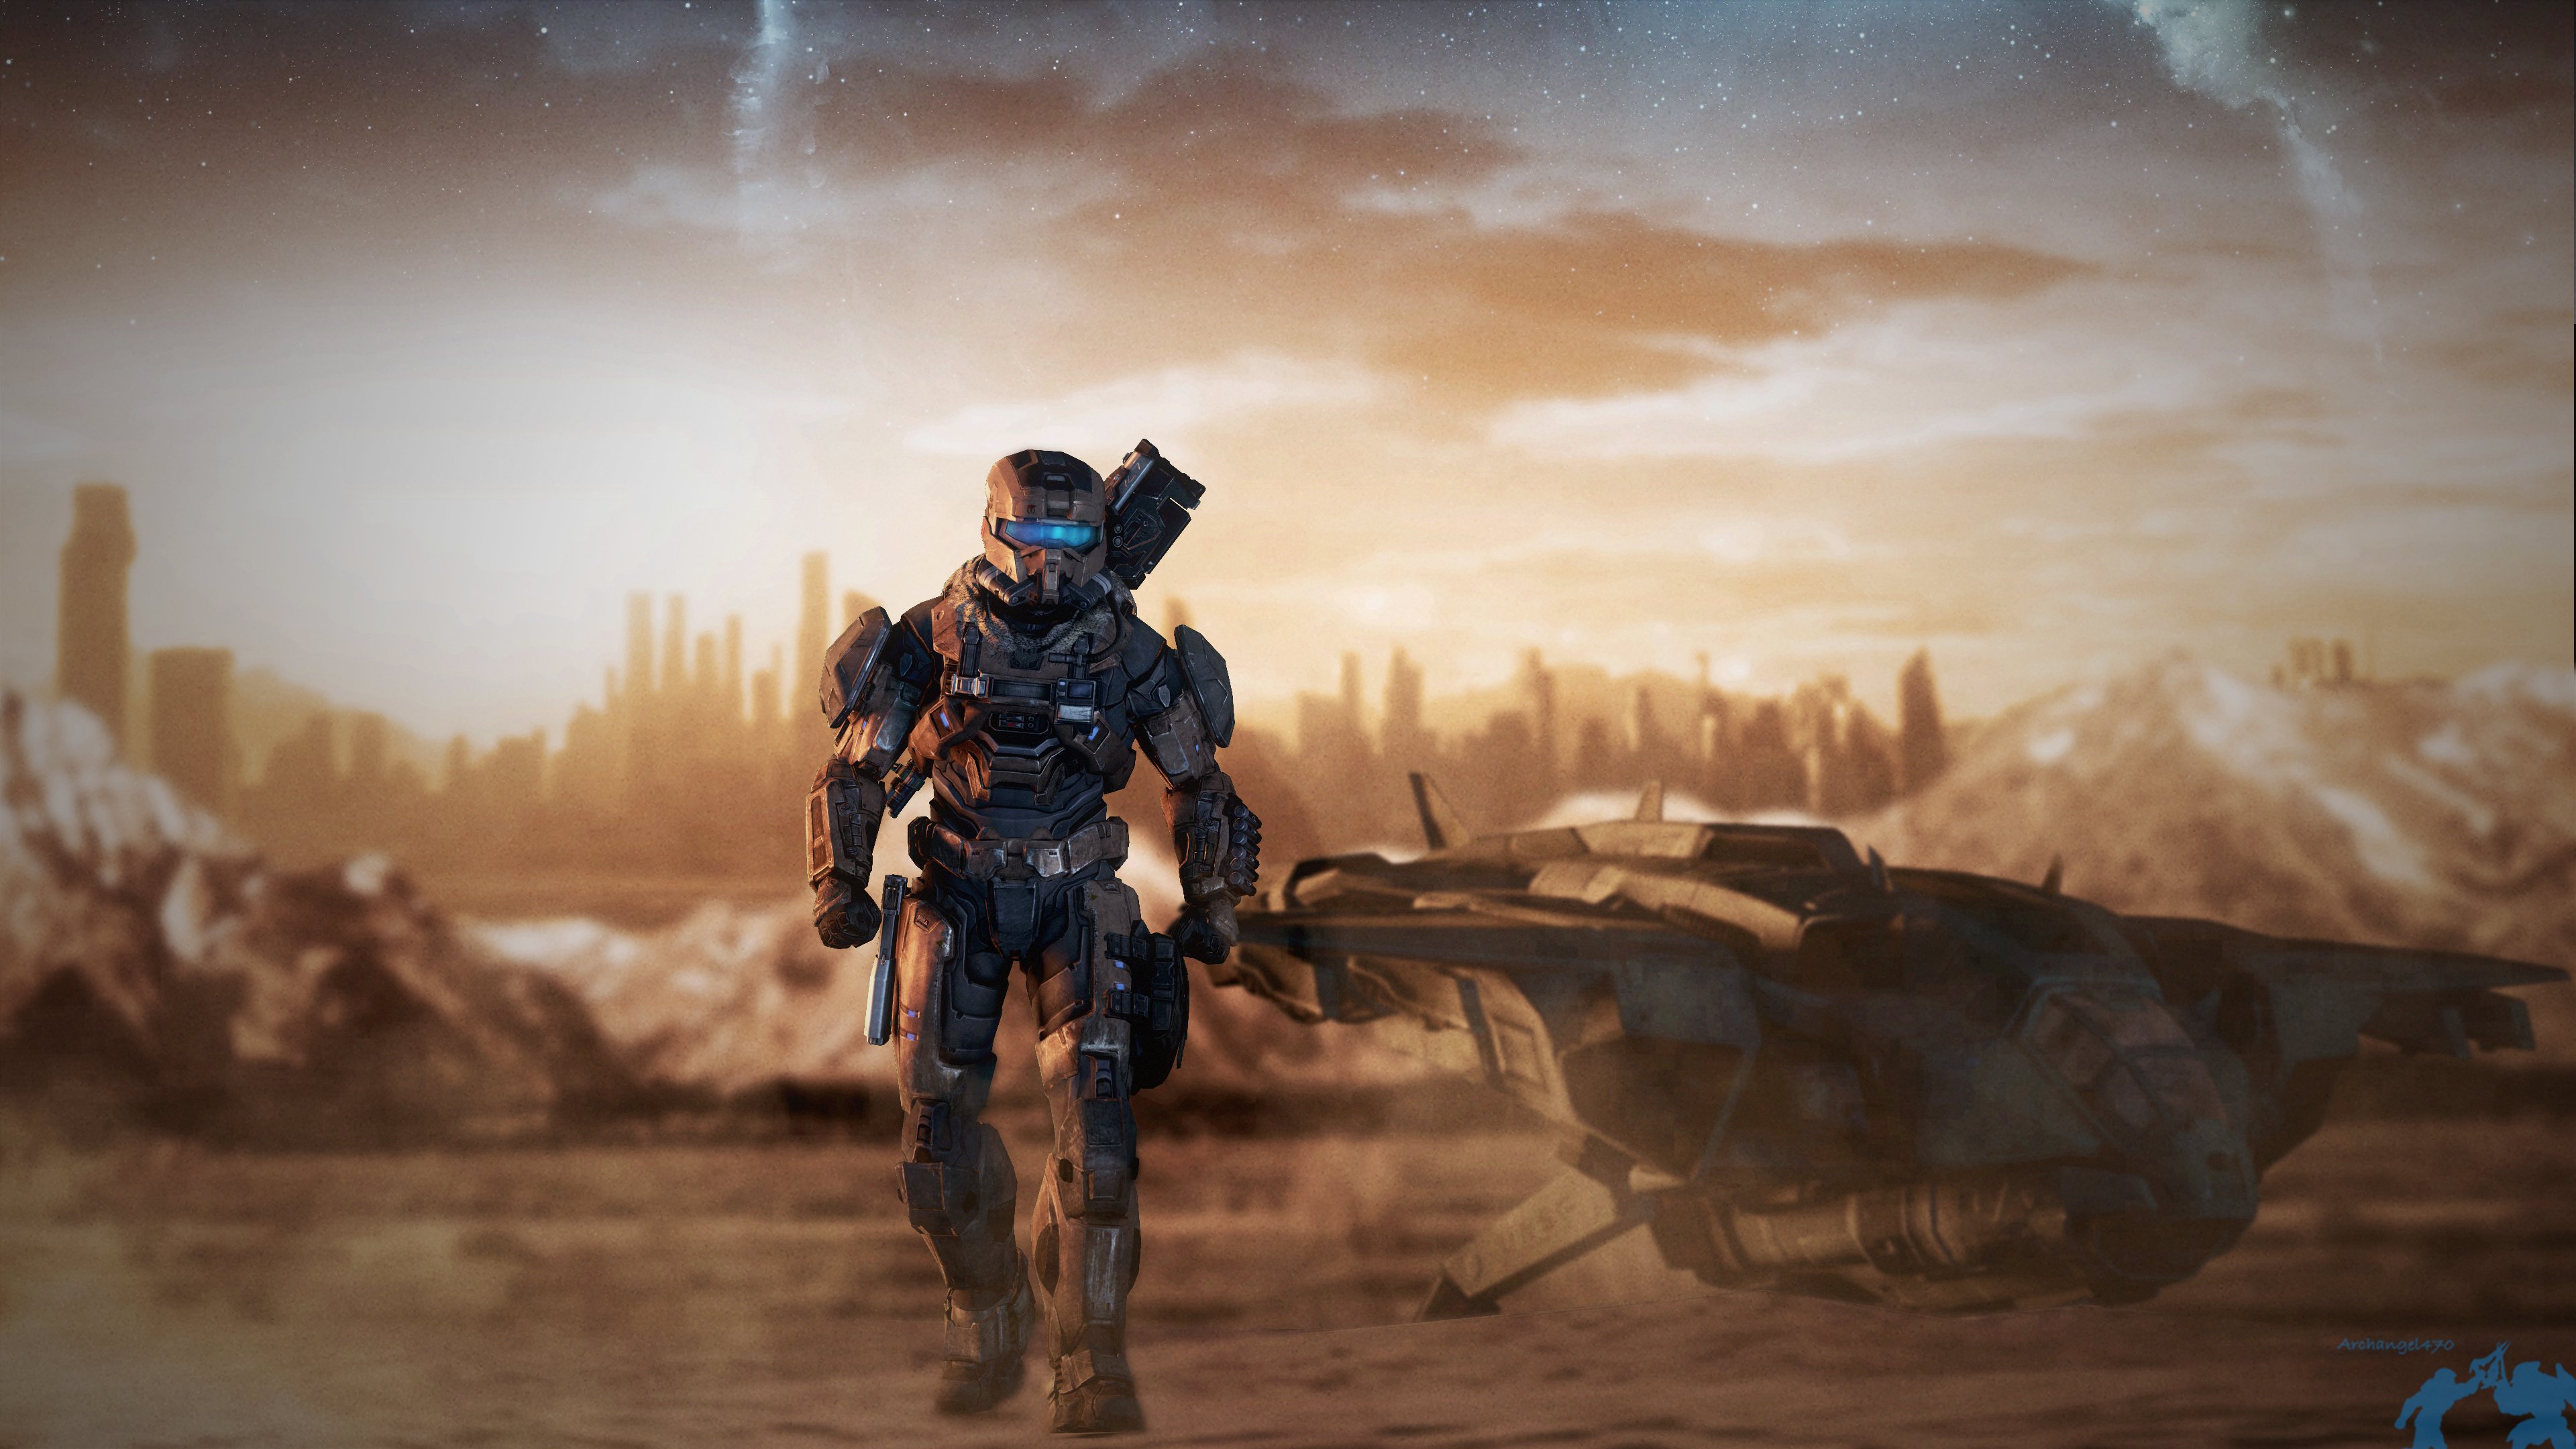 Fondos de pantalla Halo The Rogue Spartan